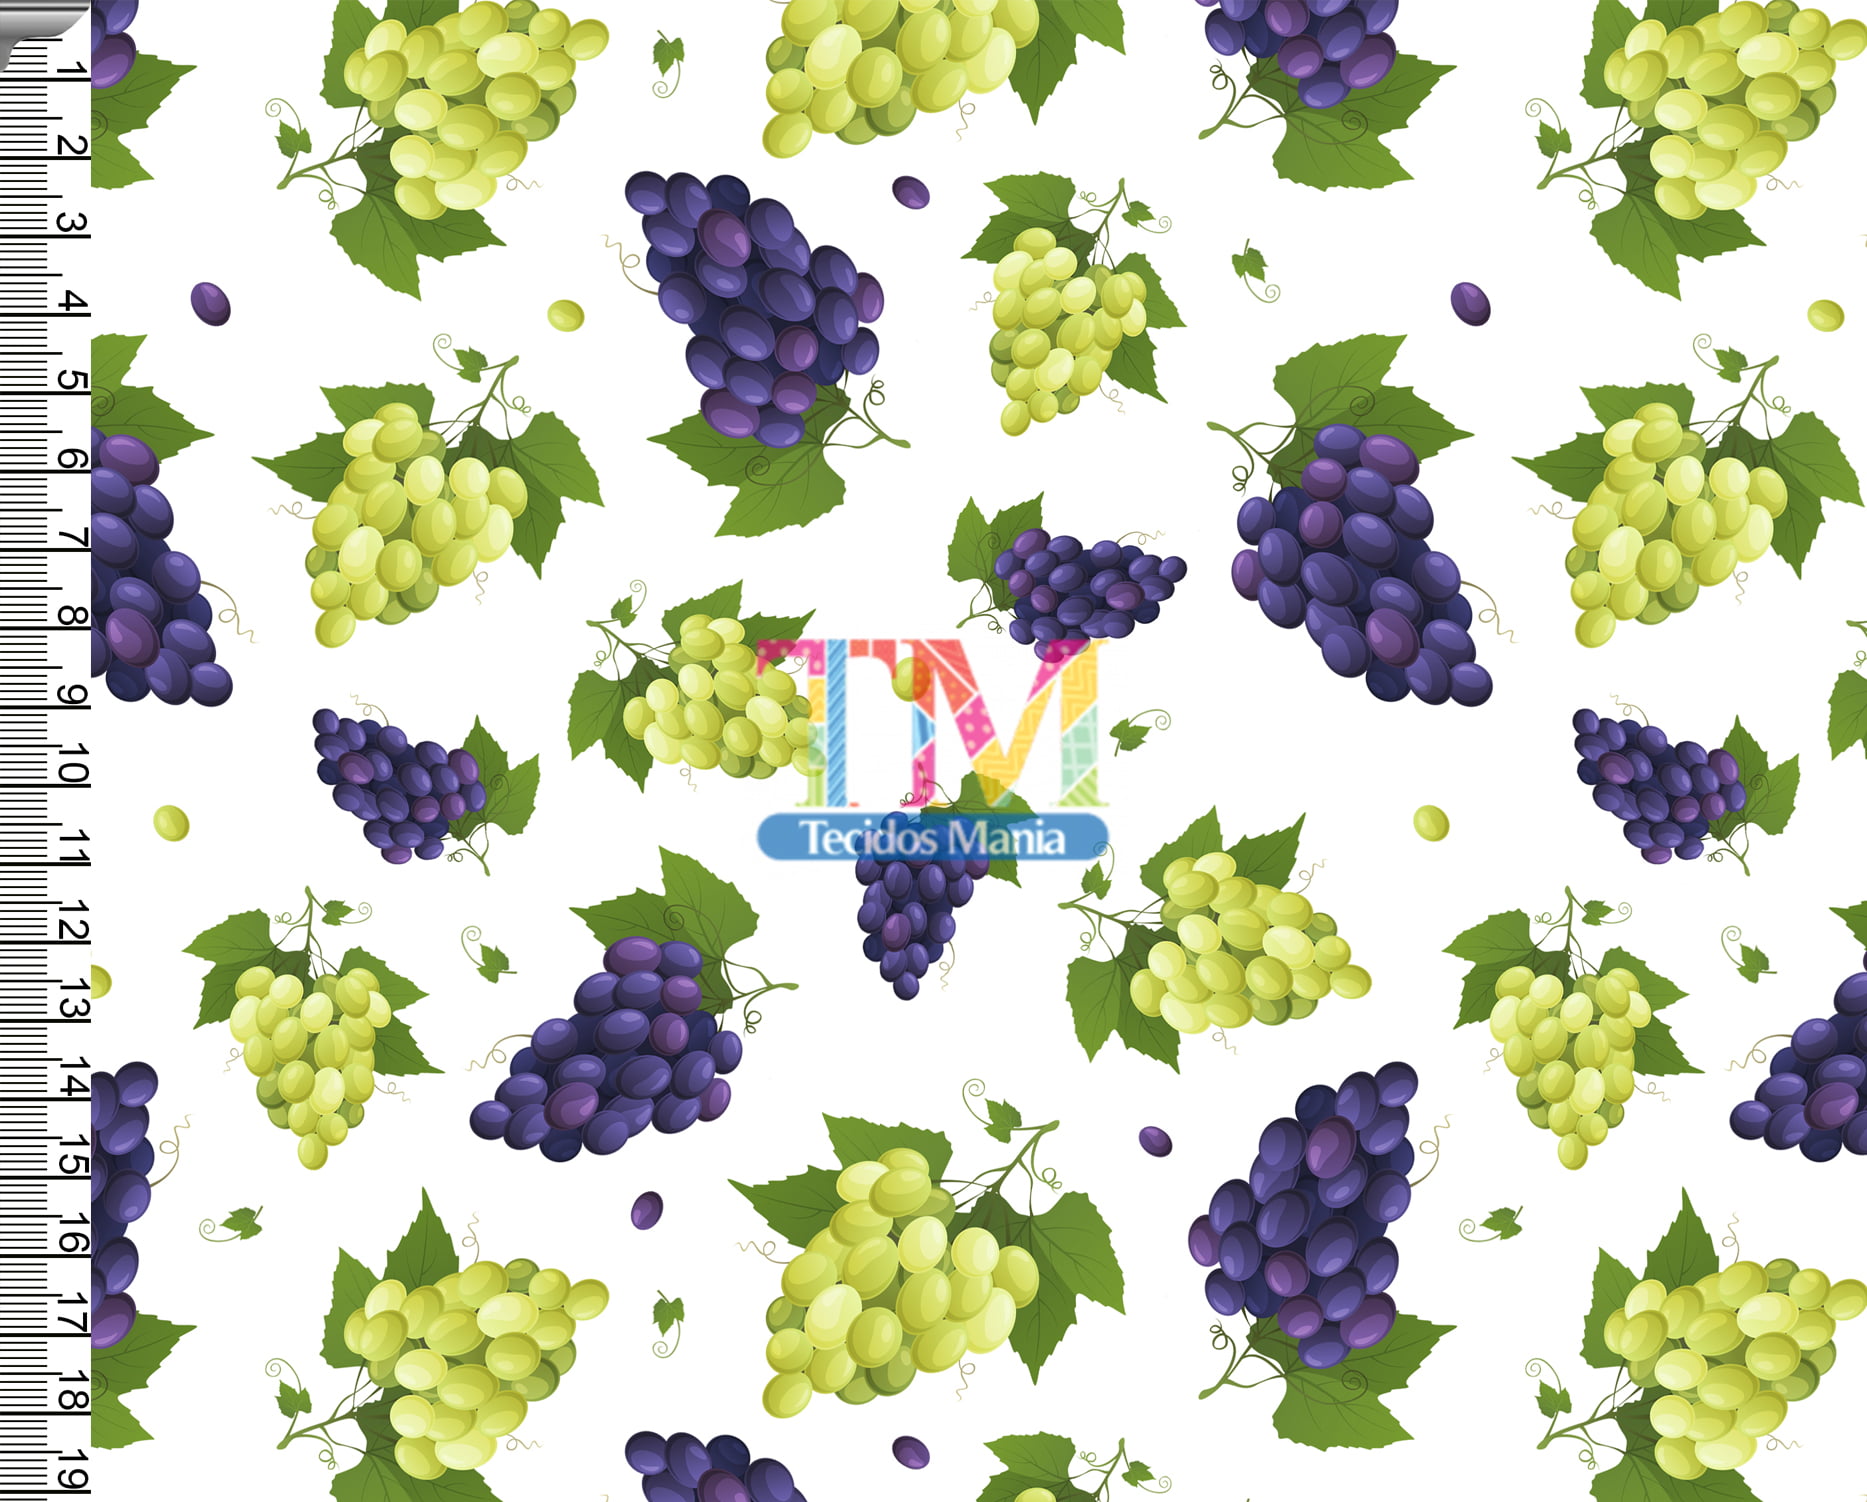 Tecido tricoline, microfibra ou gabardine estampado - Cacho de uvas roxas e verdes - fundo branco